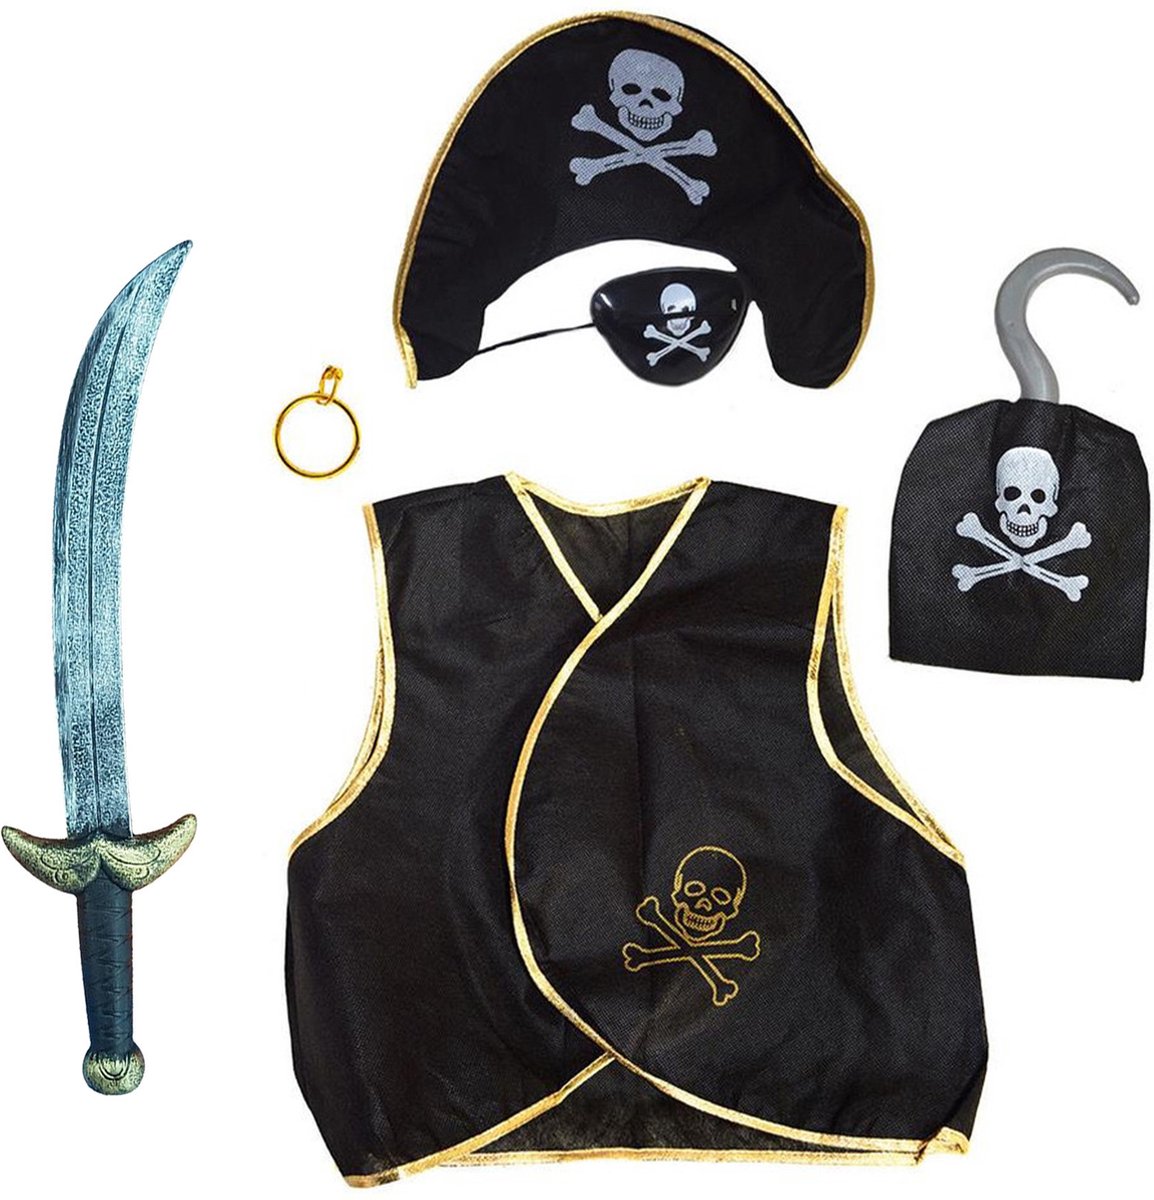 Kinderen speelgoed verkleed set in Piraten stijl thema 6-delig